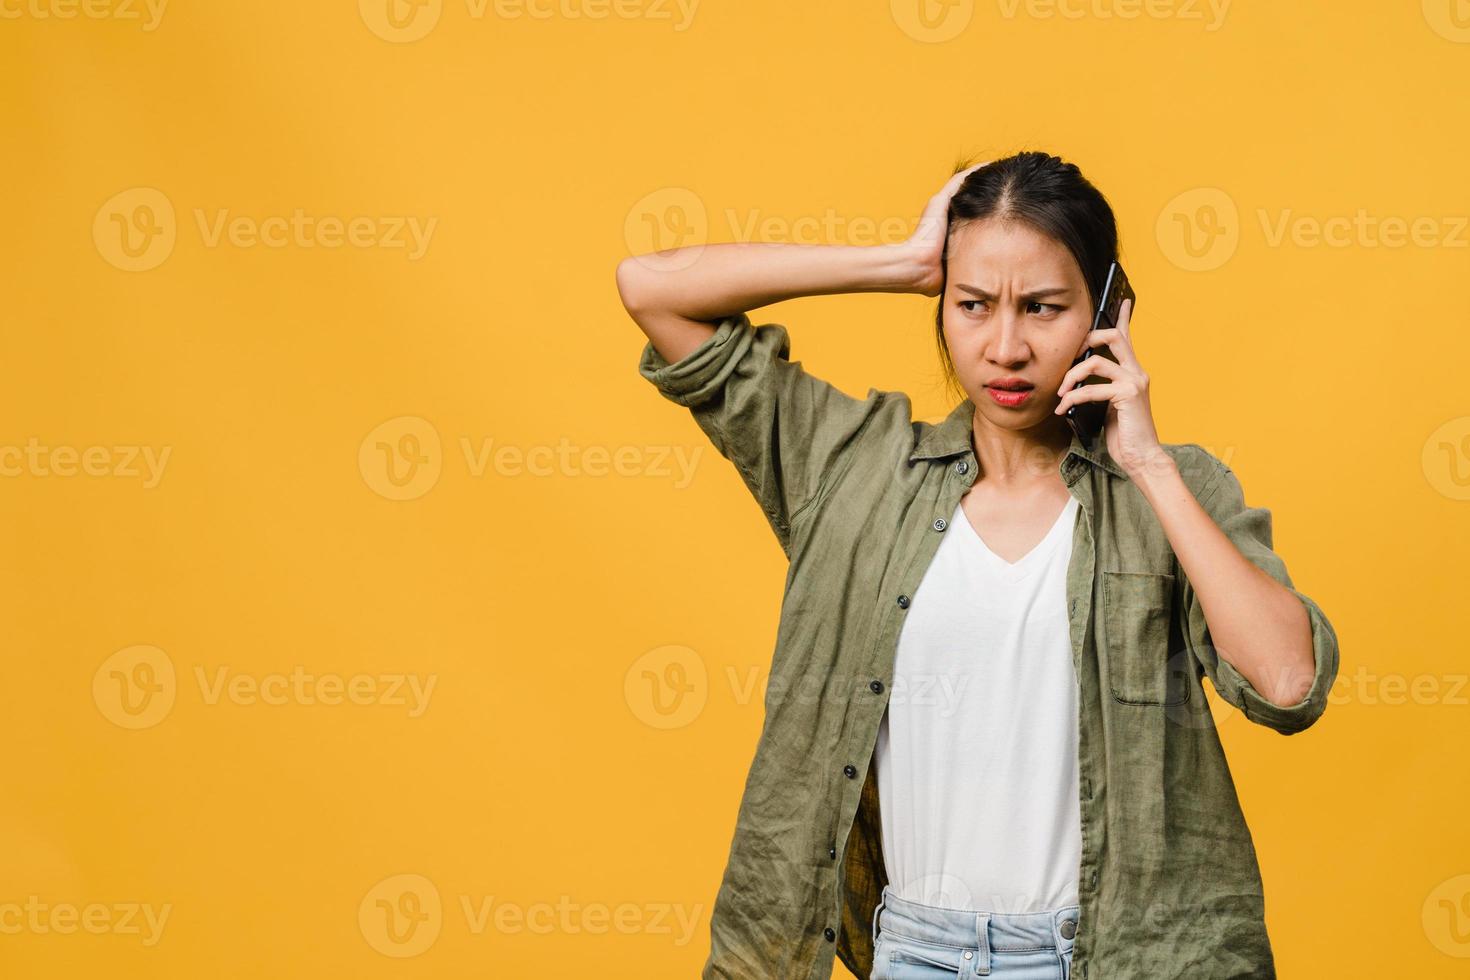 jovencita asiática habla por teléfono con expresión negativa, gritos emocionados, gritos emocionales enojados en ropa casual y se para aislado sobre fondo amarillo con espacio de copia en blanco. concepto de expresión facial. foto